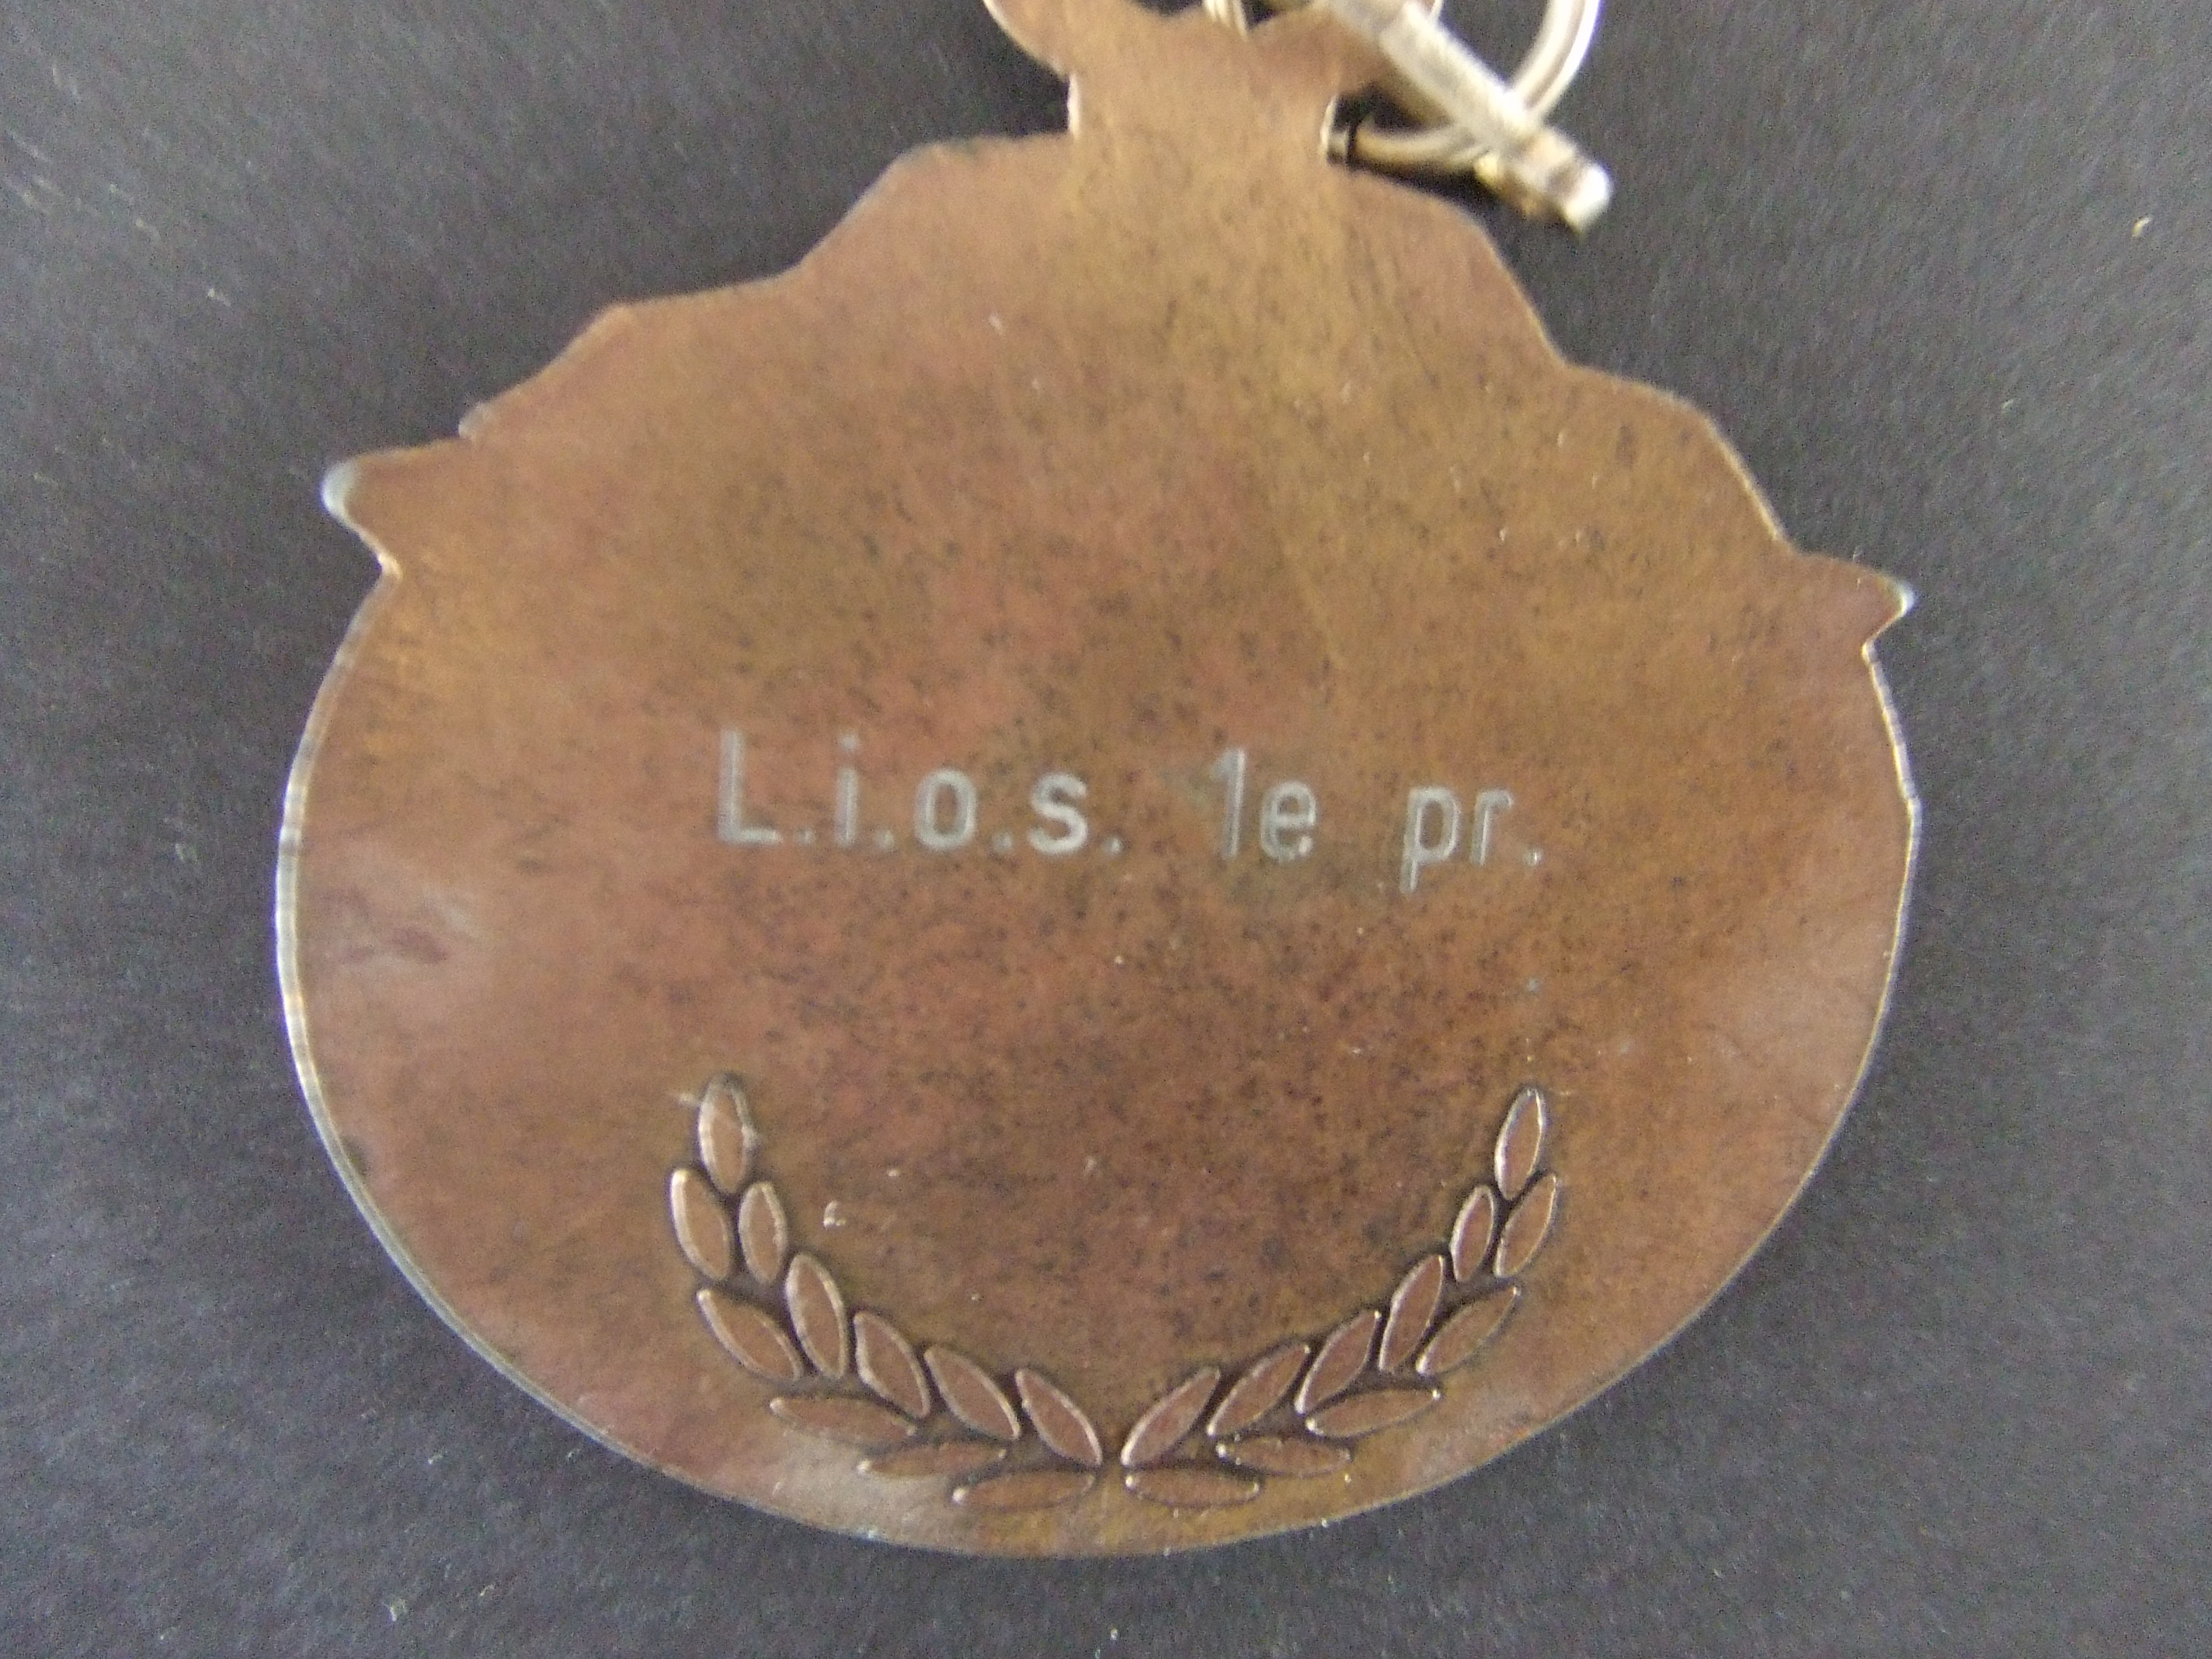 L.I.O.S.gymnastiekvereniging Breda 1e prijs (2)